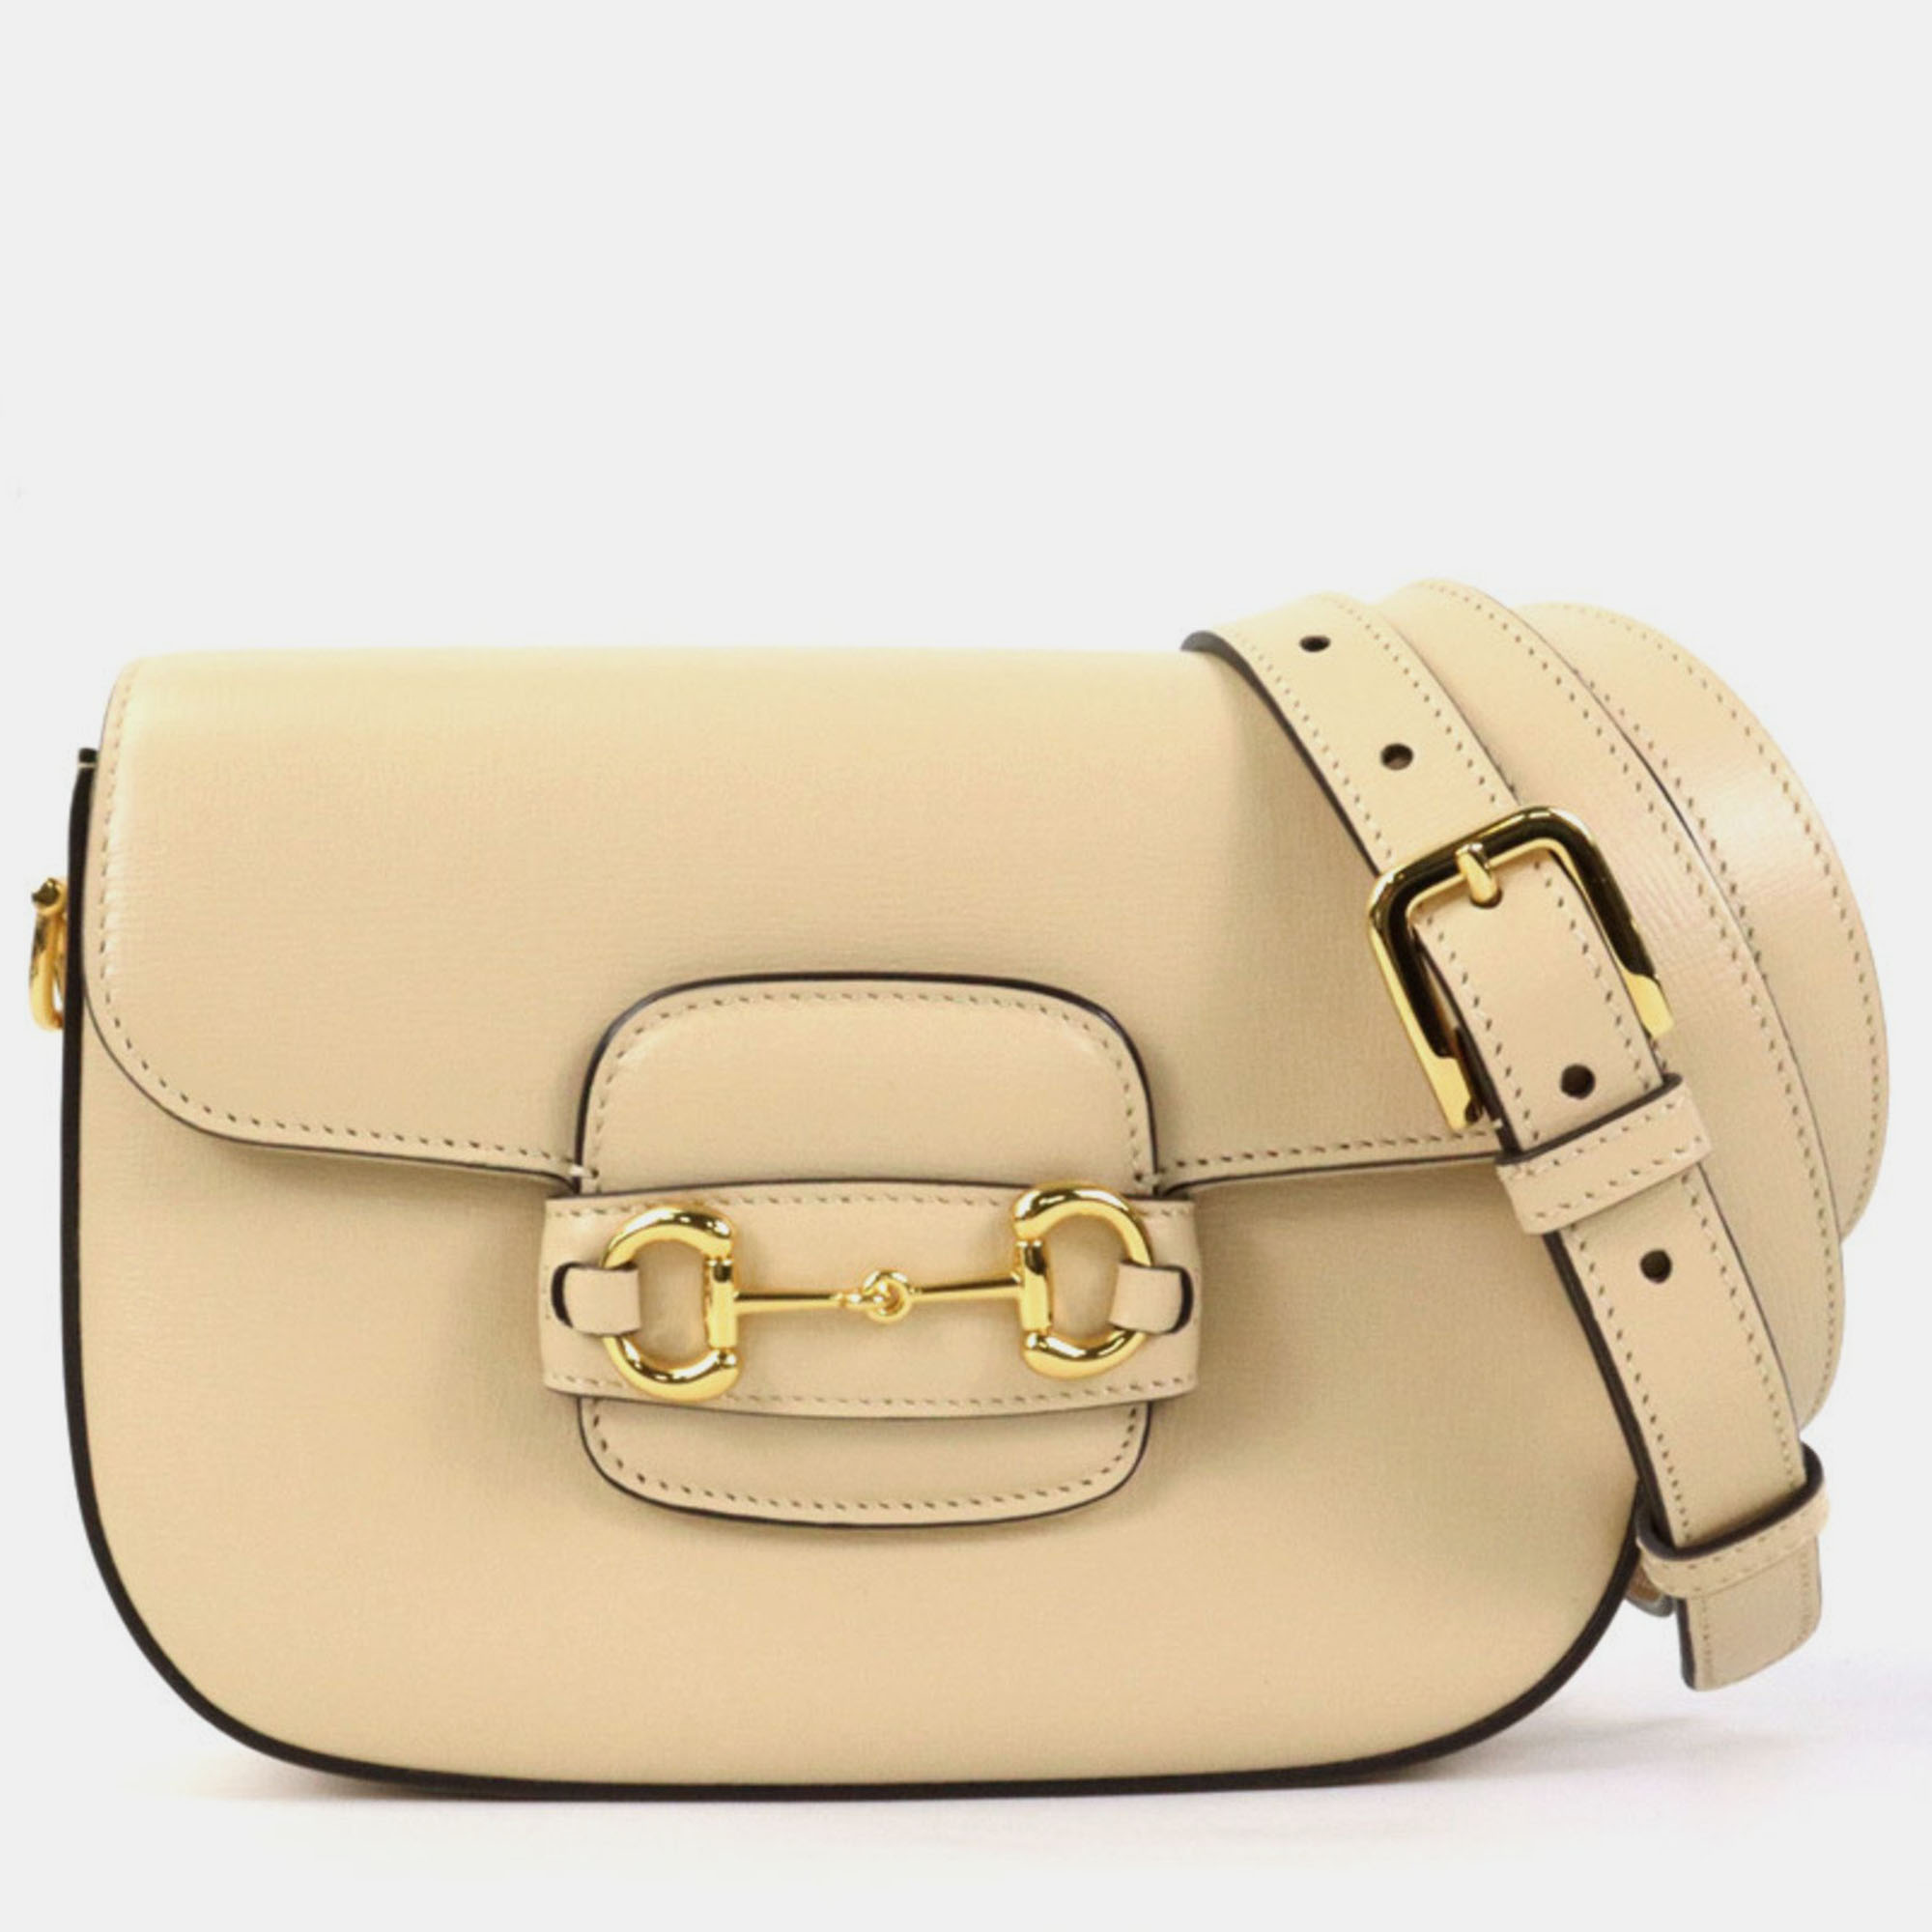 Gucci Beige Leather Horsebit 1955 Shoulder Bag